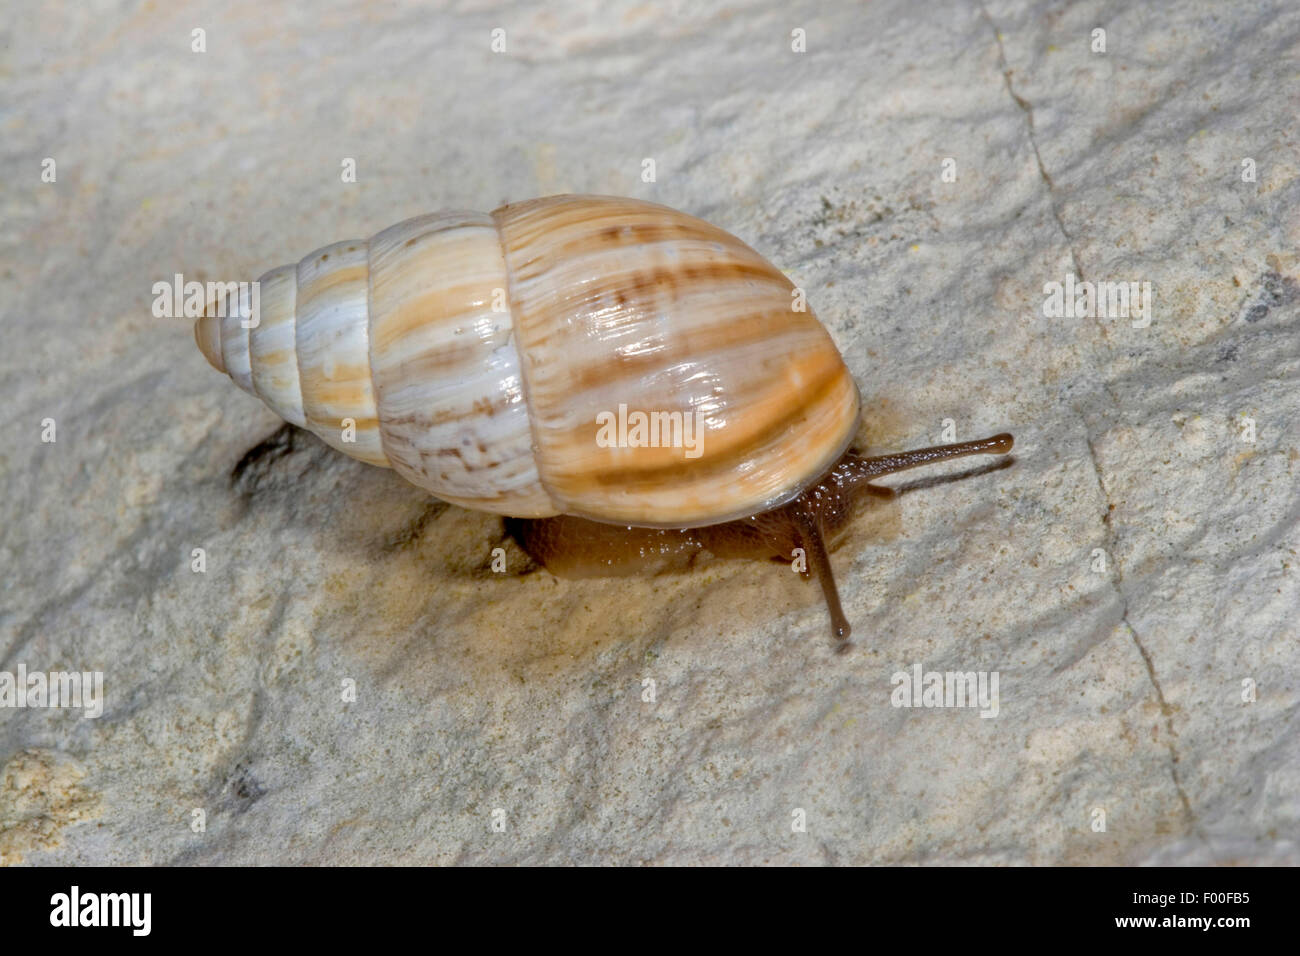 Large Bulin, Zebra Snail, Bulin Snail (Zebrina detrita), on a stone, Germany Stock Photo